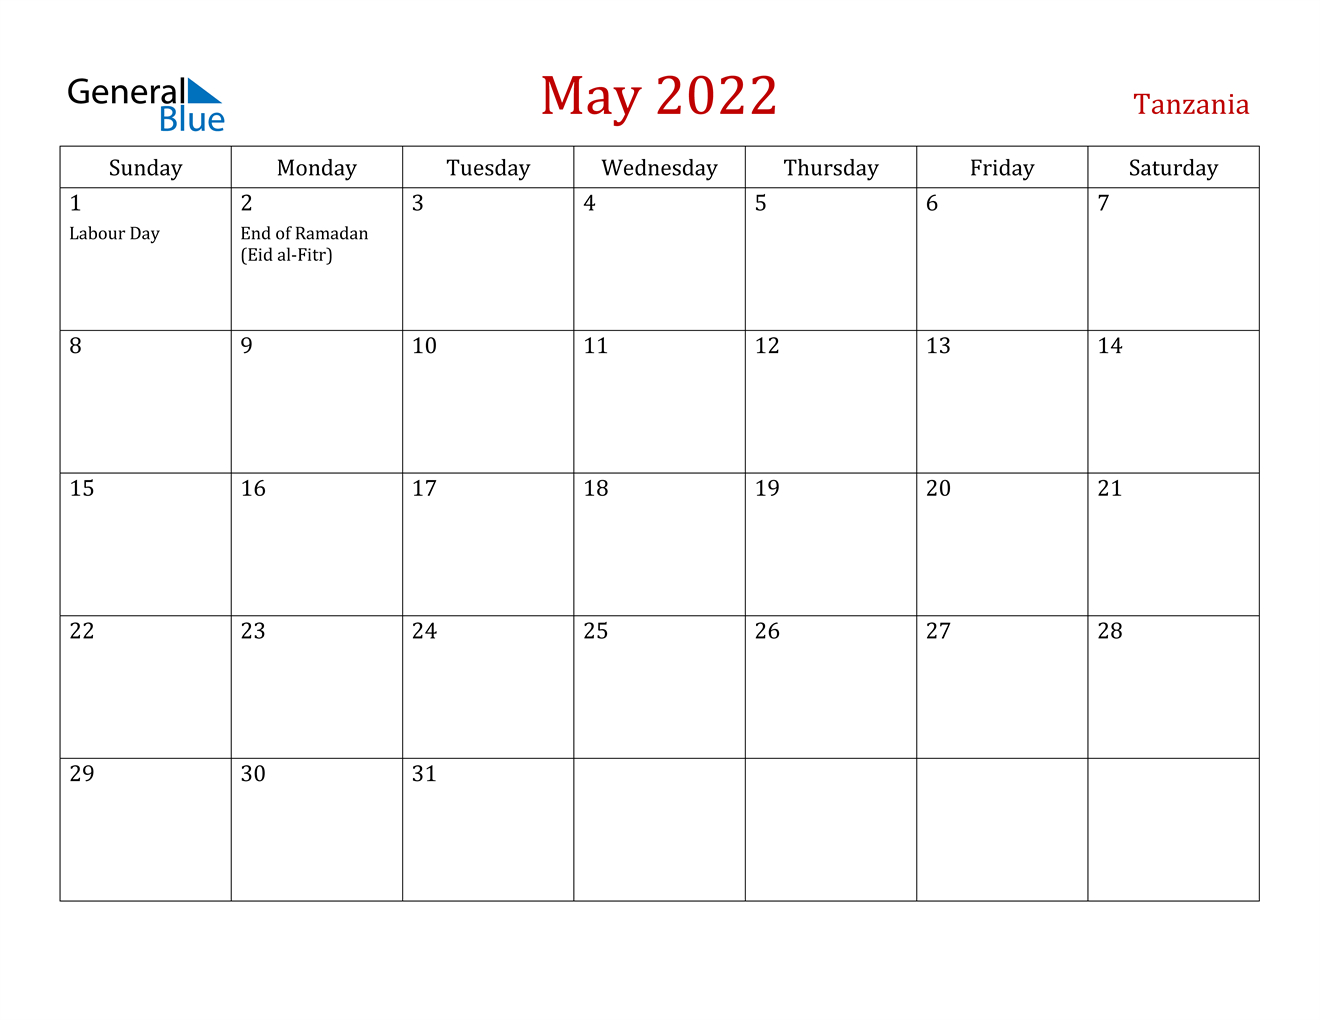 May 2022 Calendar - Tanzania